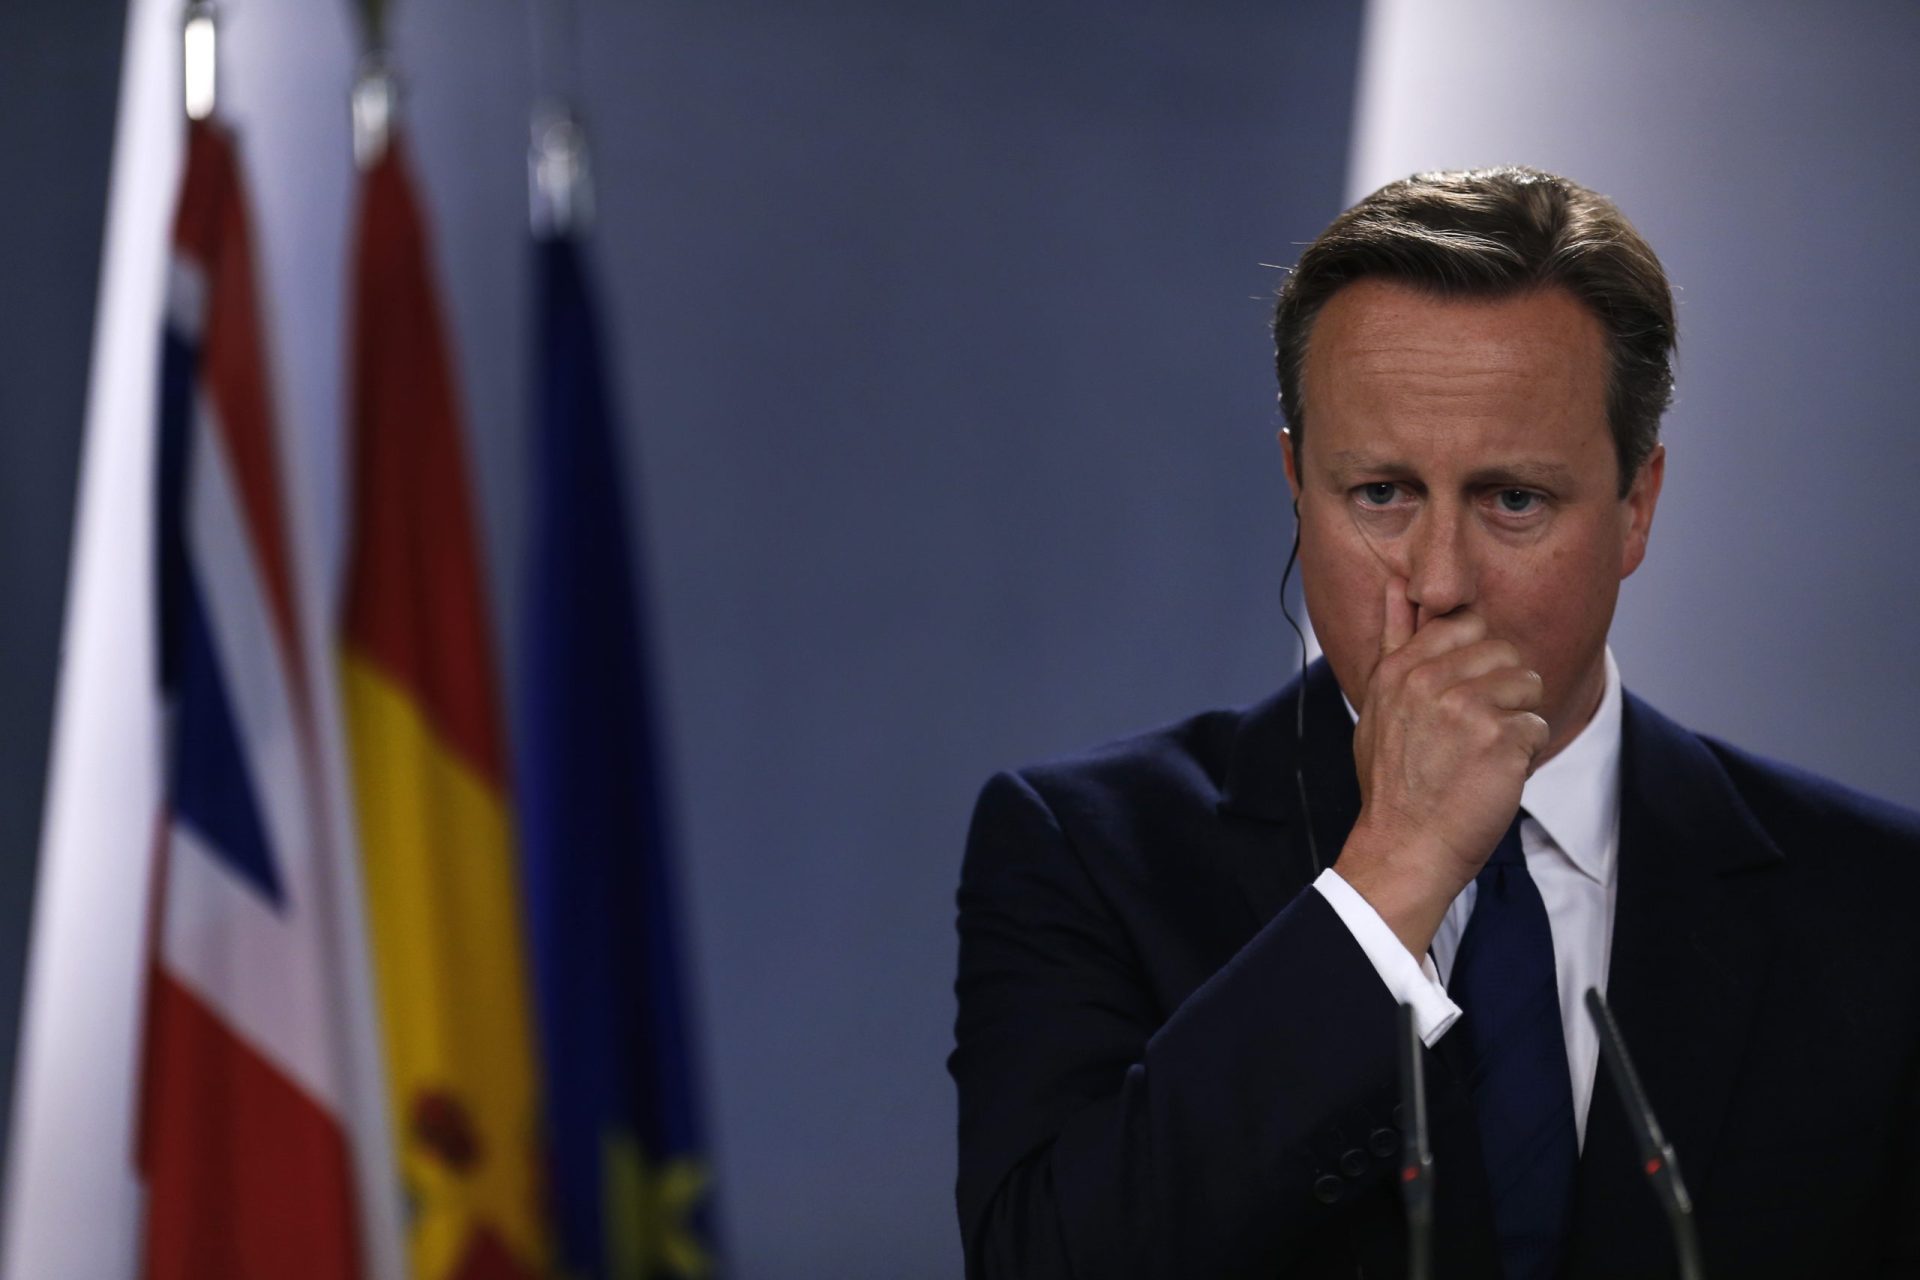 #piggate: polémica envolve David Cameron, genitais e um porco morto